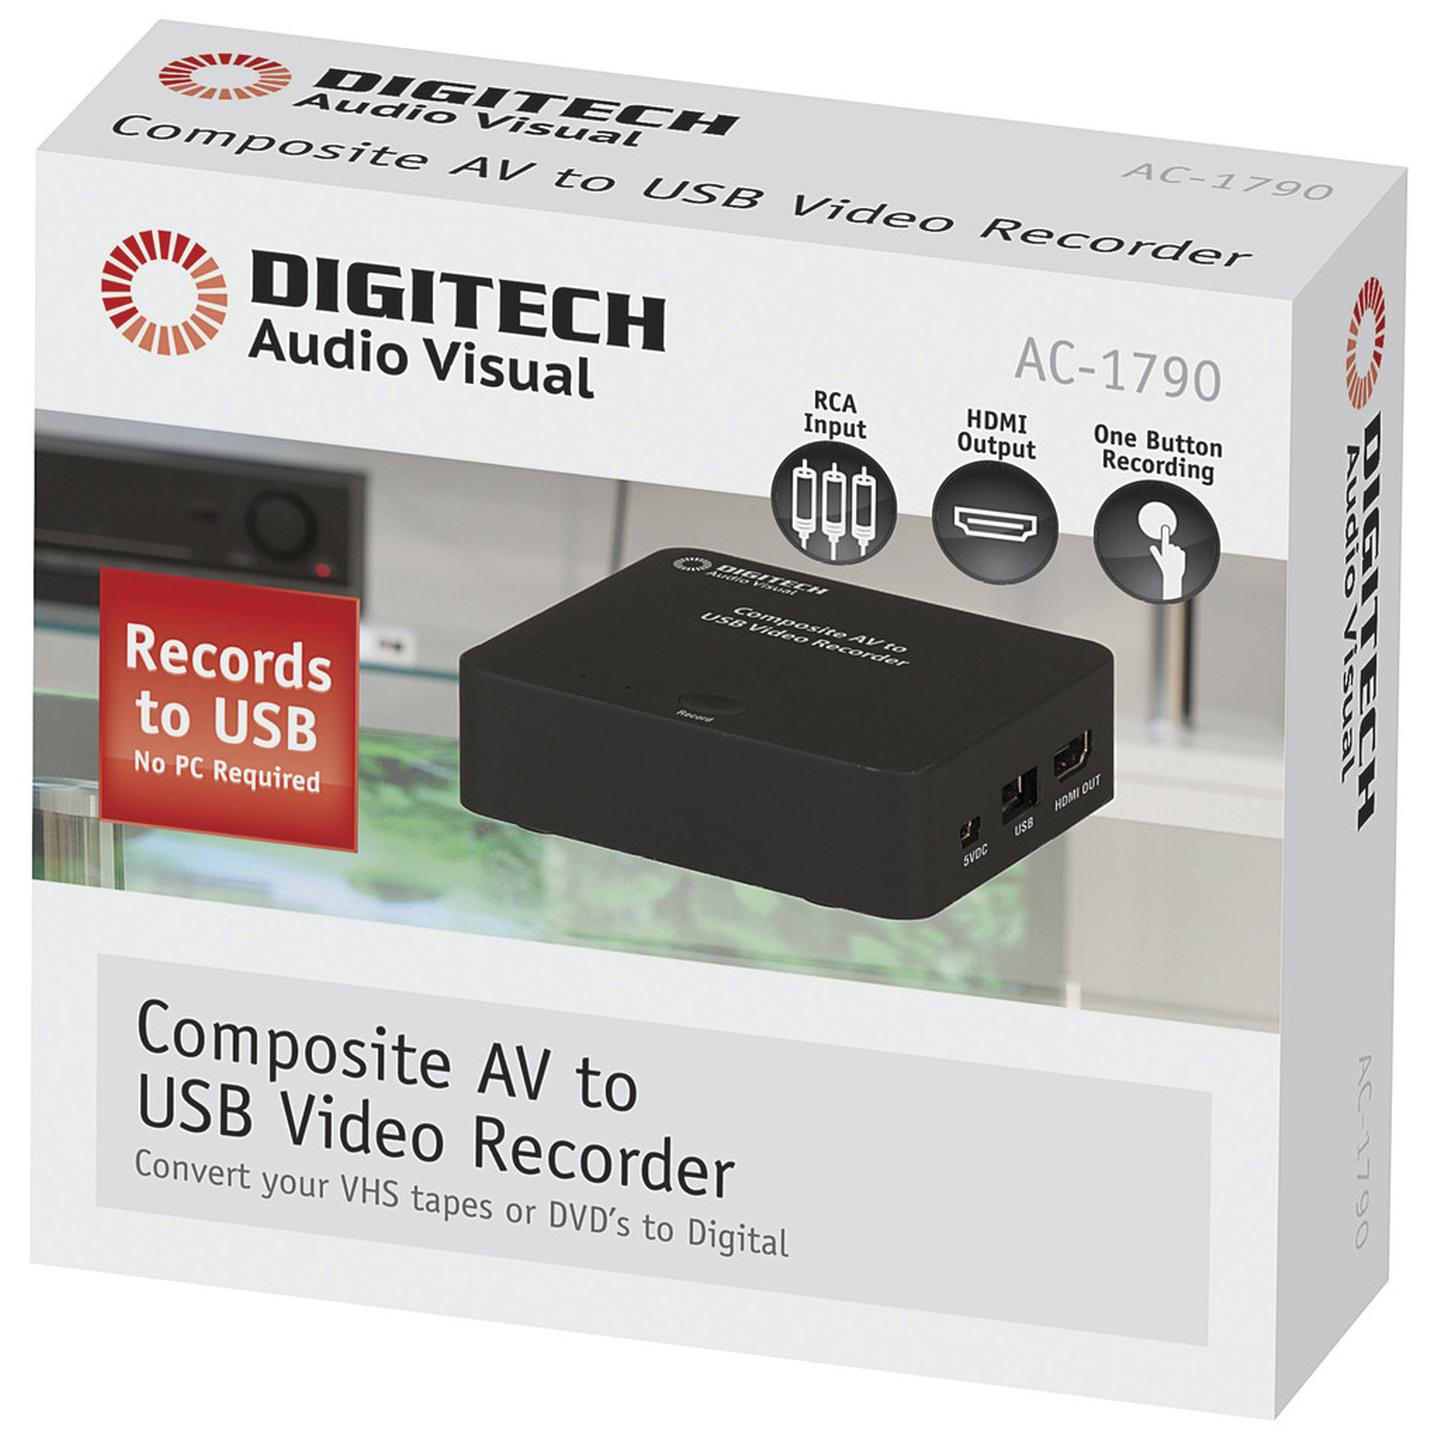 Composite AV to USB Video Recorder